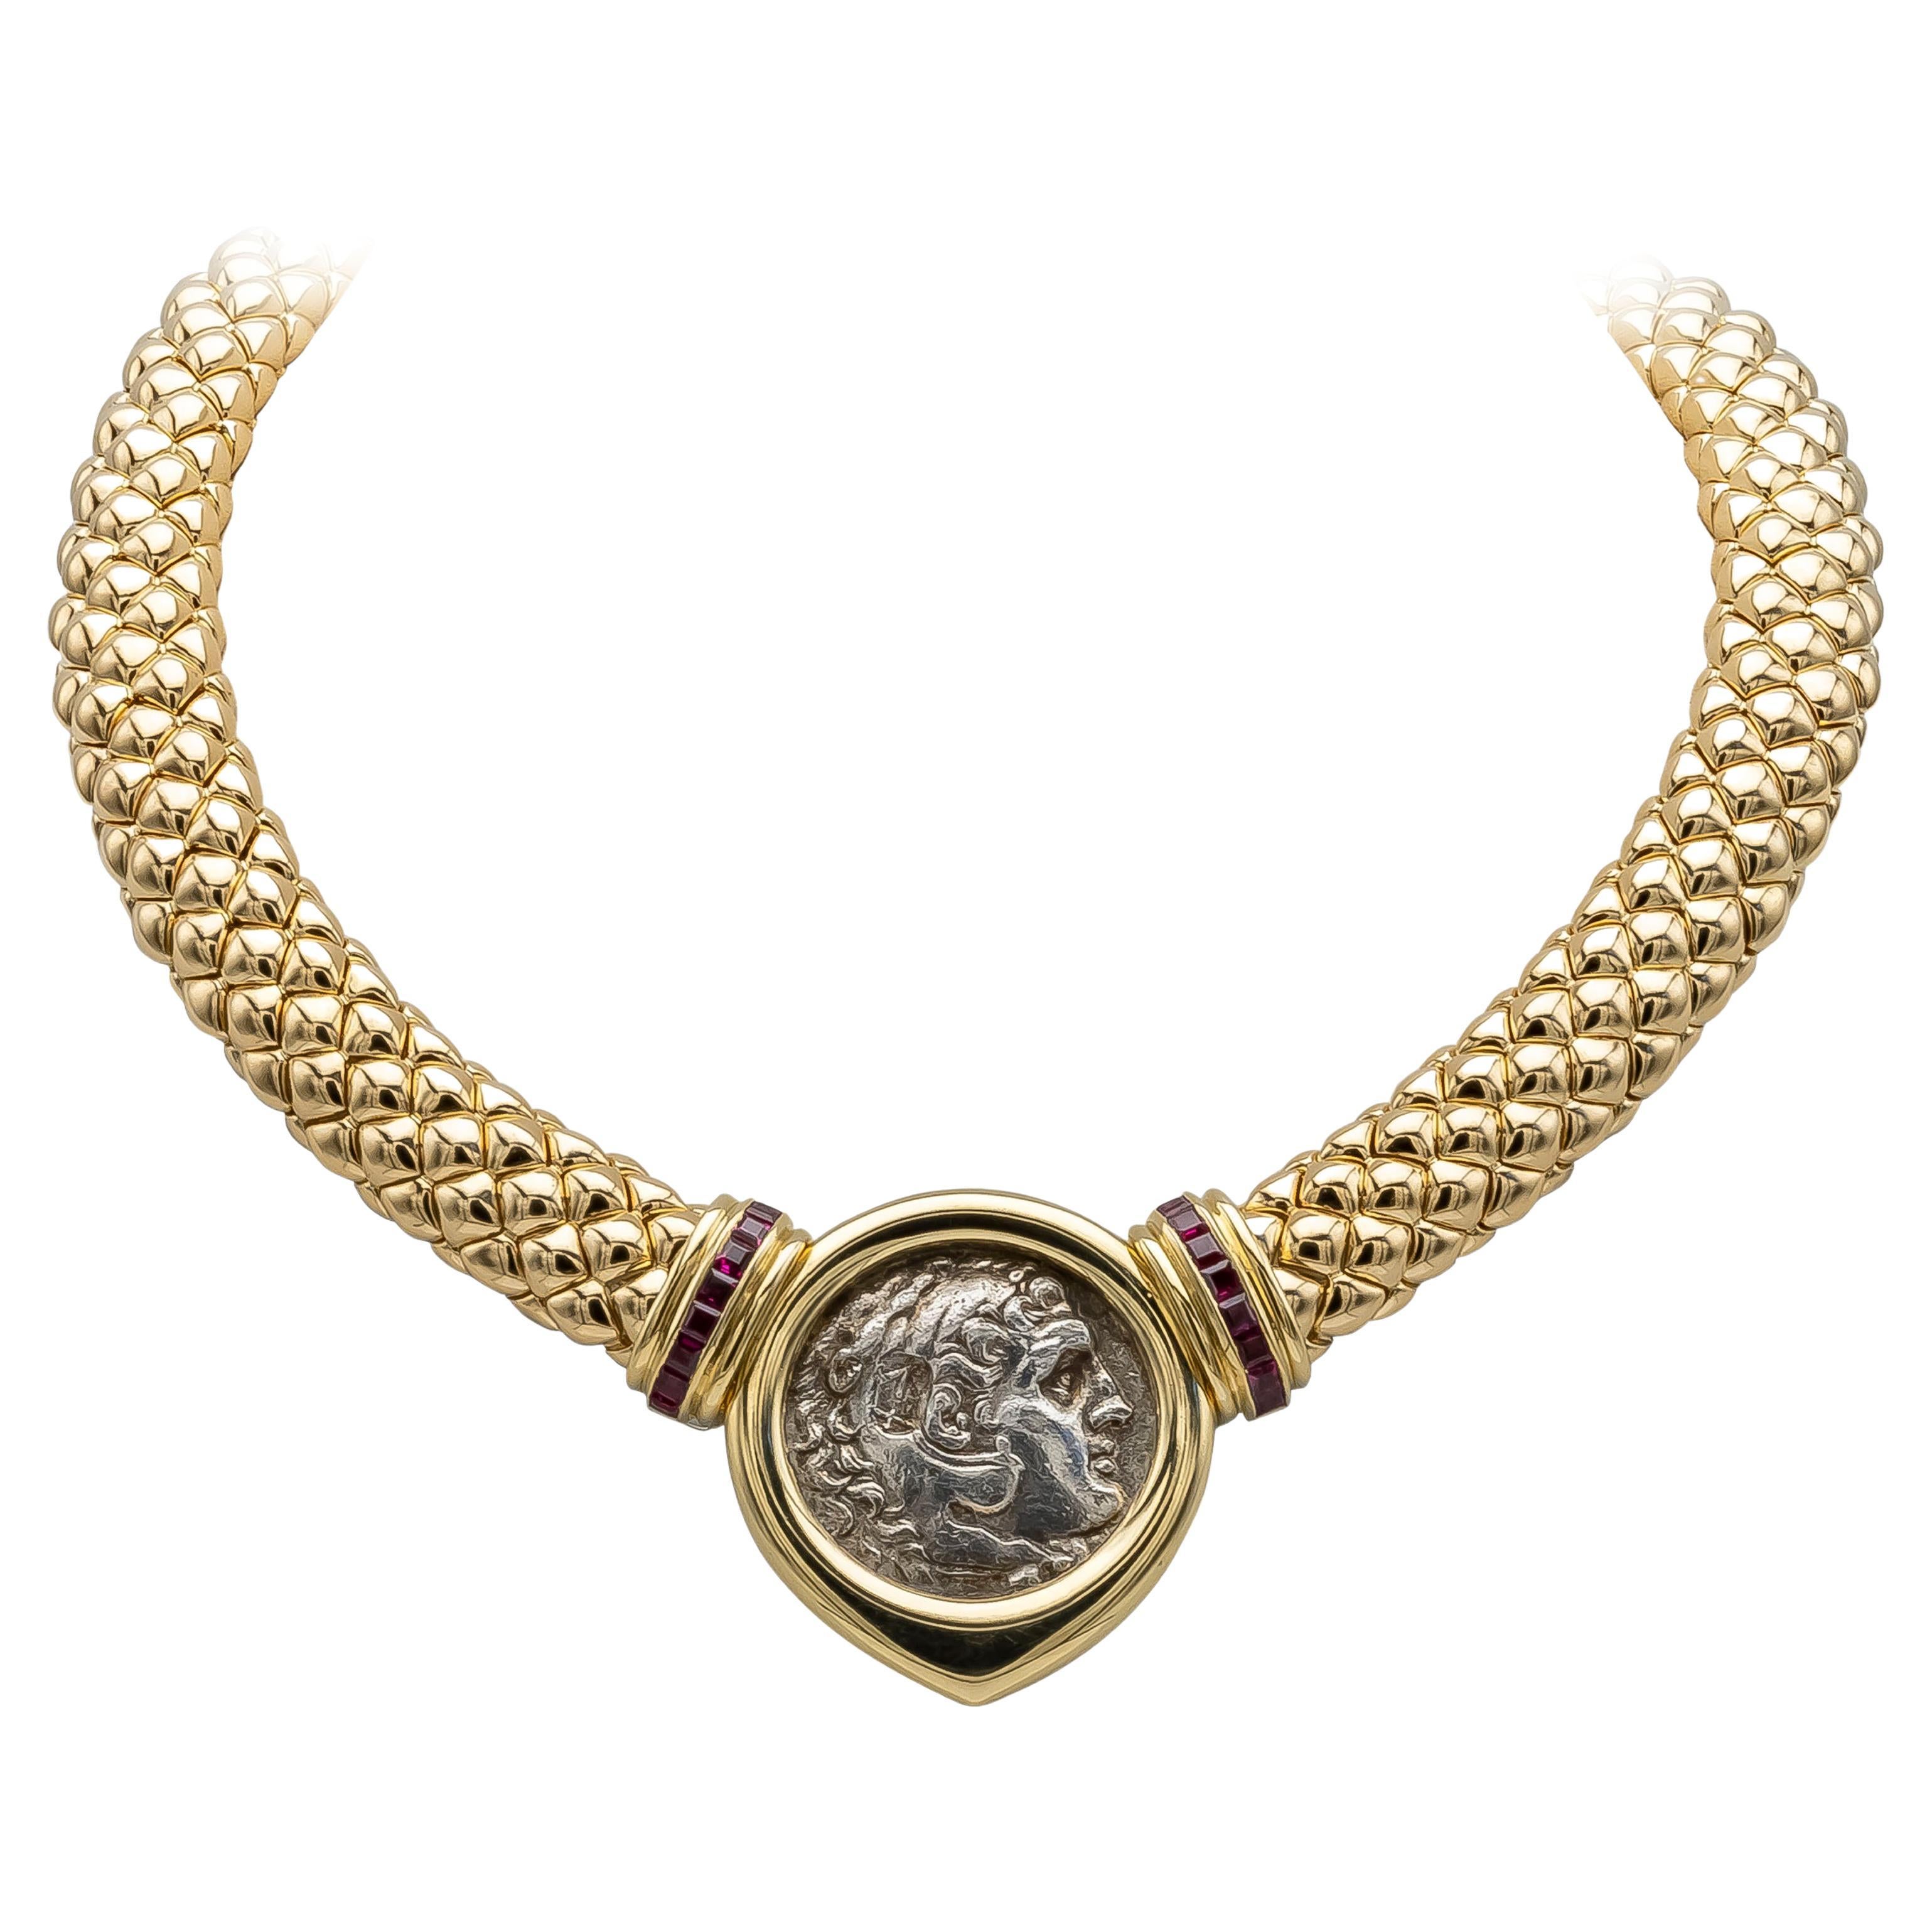 Halskette aus 18 Karat Gelbgold mit italienischem Münzkragen